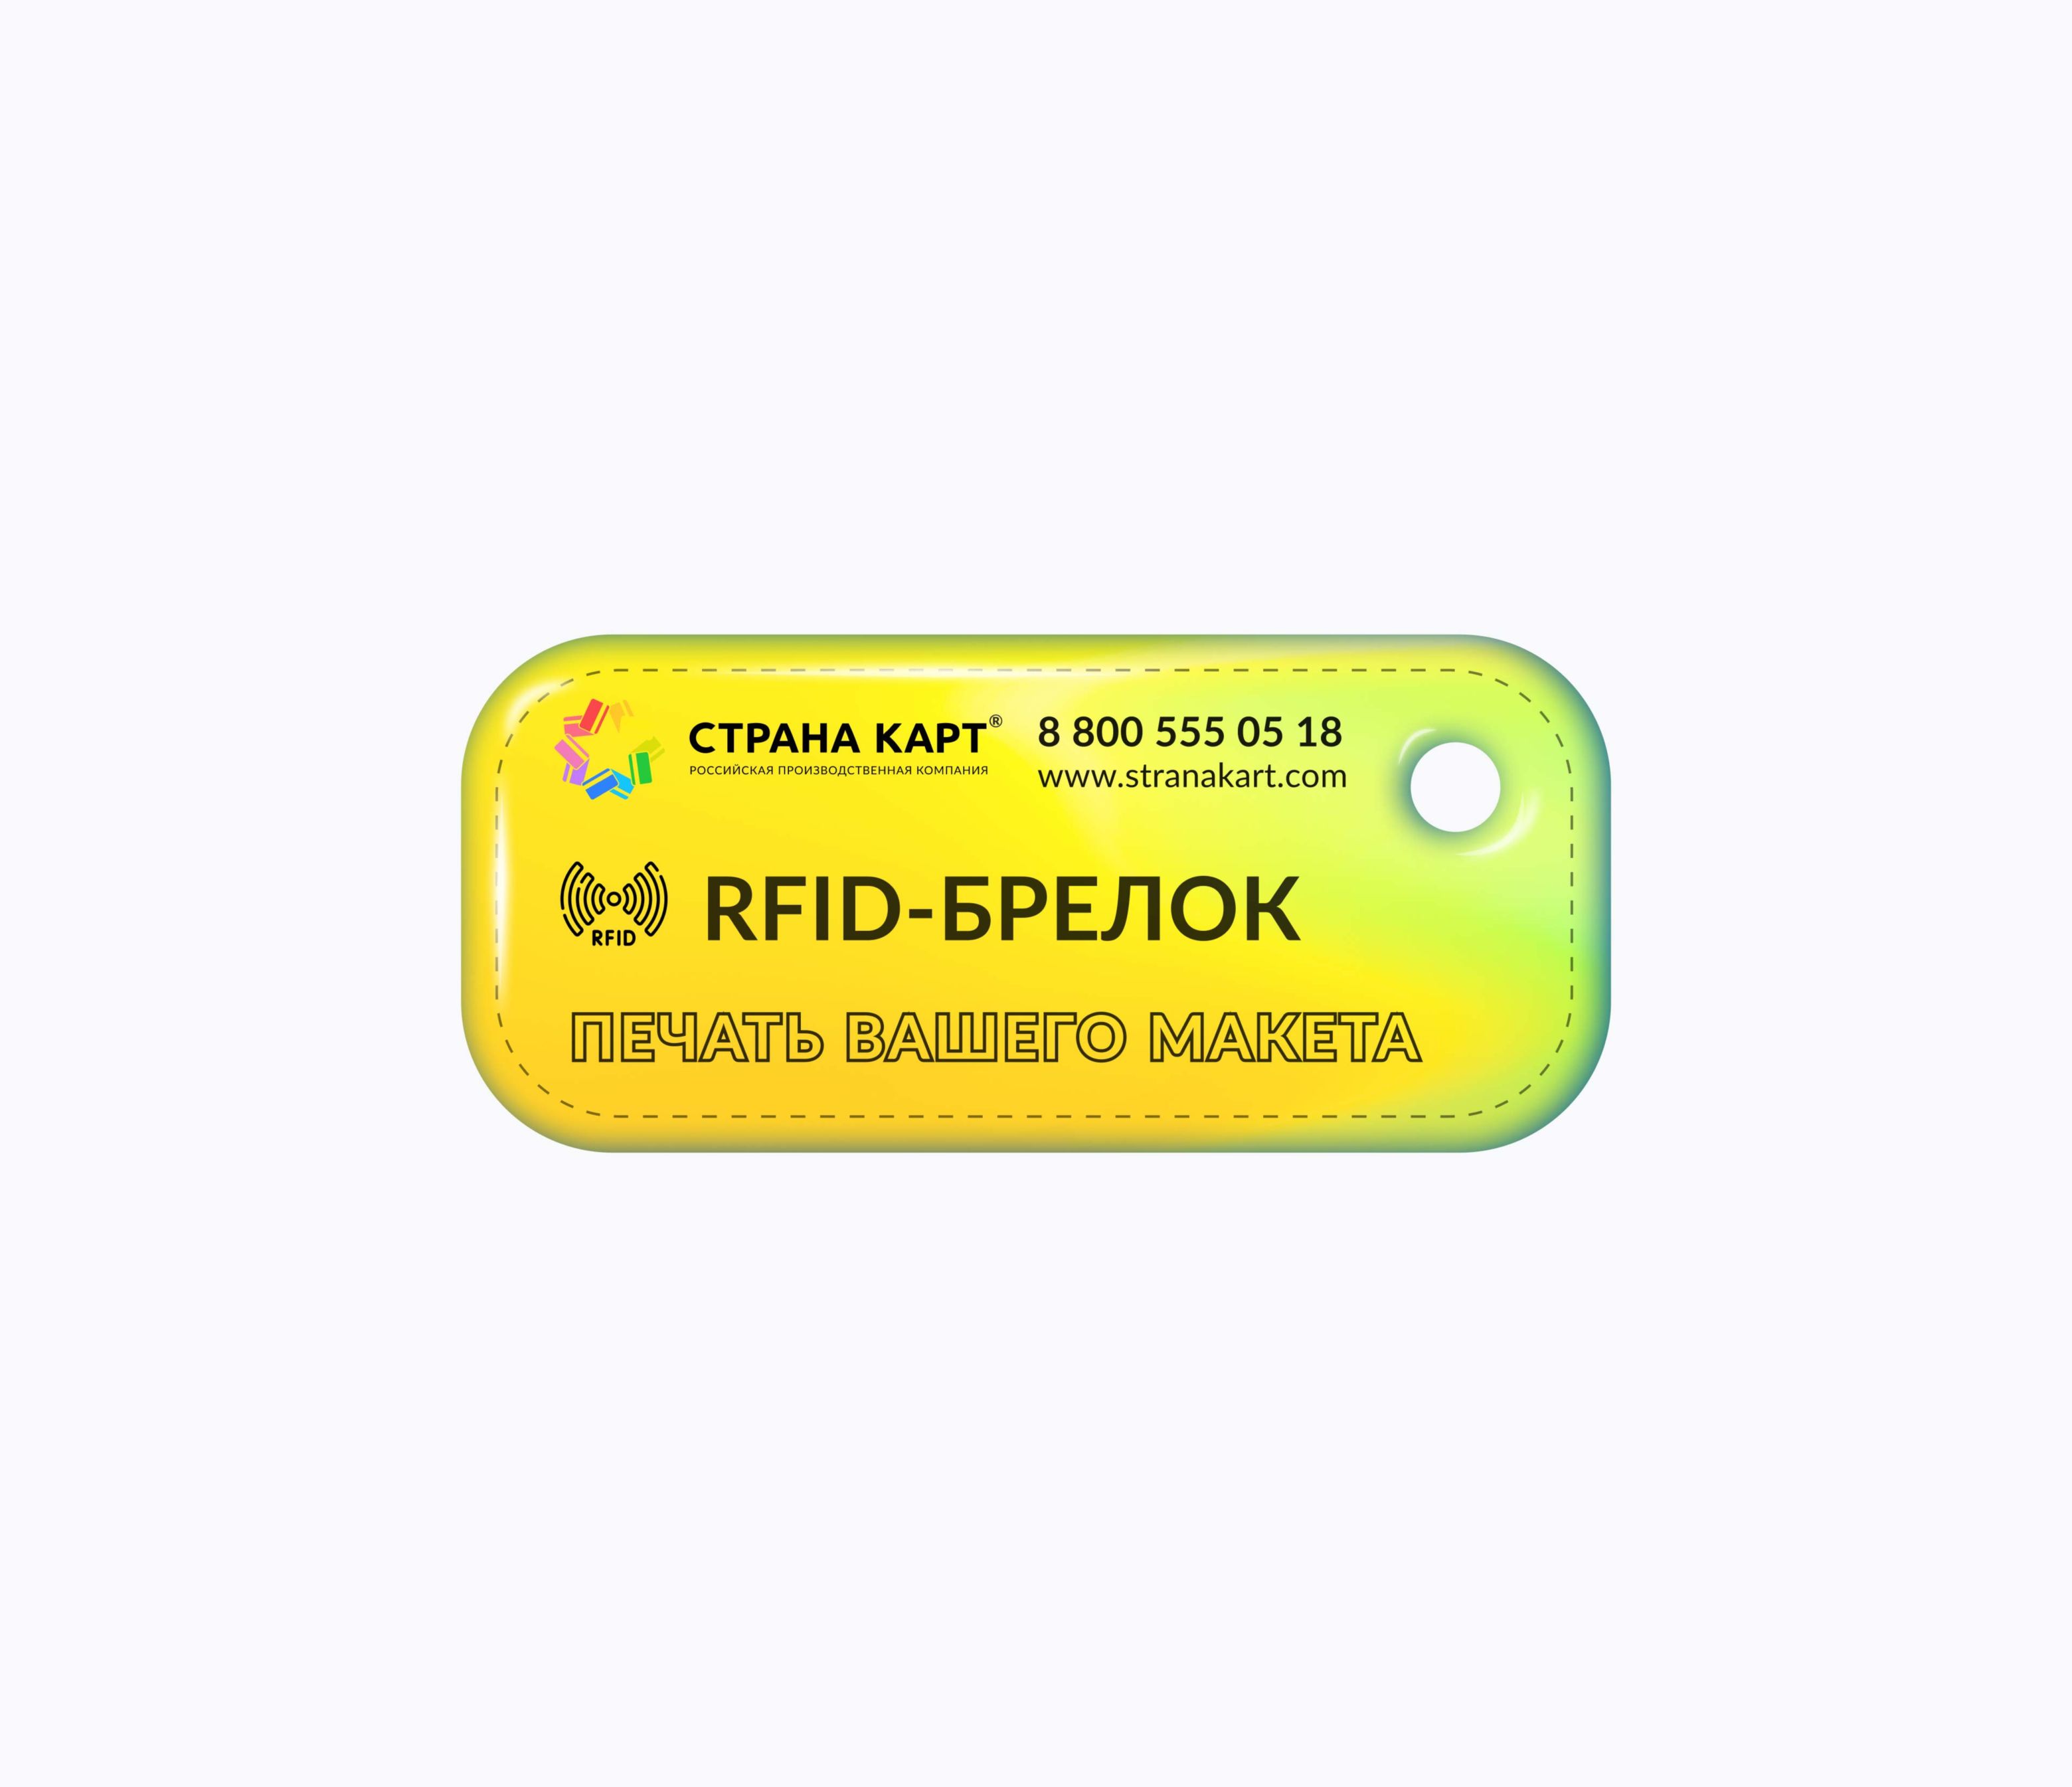 Прямоугольные Мини RFID-брелоки NEOKEY® с чипом для библиотек RFID-Брелок NEOKEY® с чипом для библиотеки